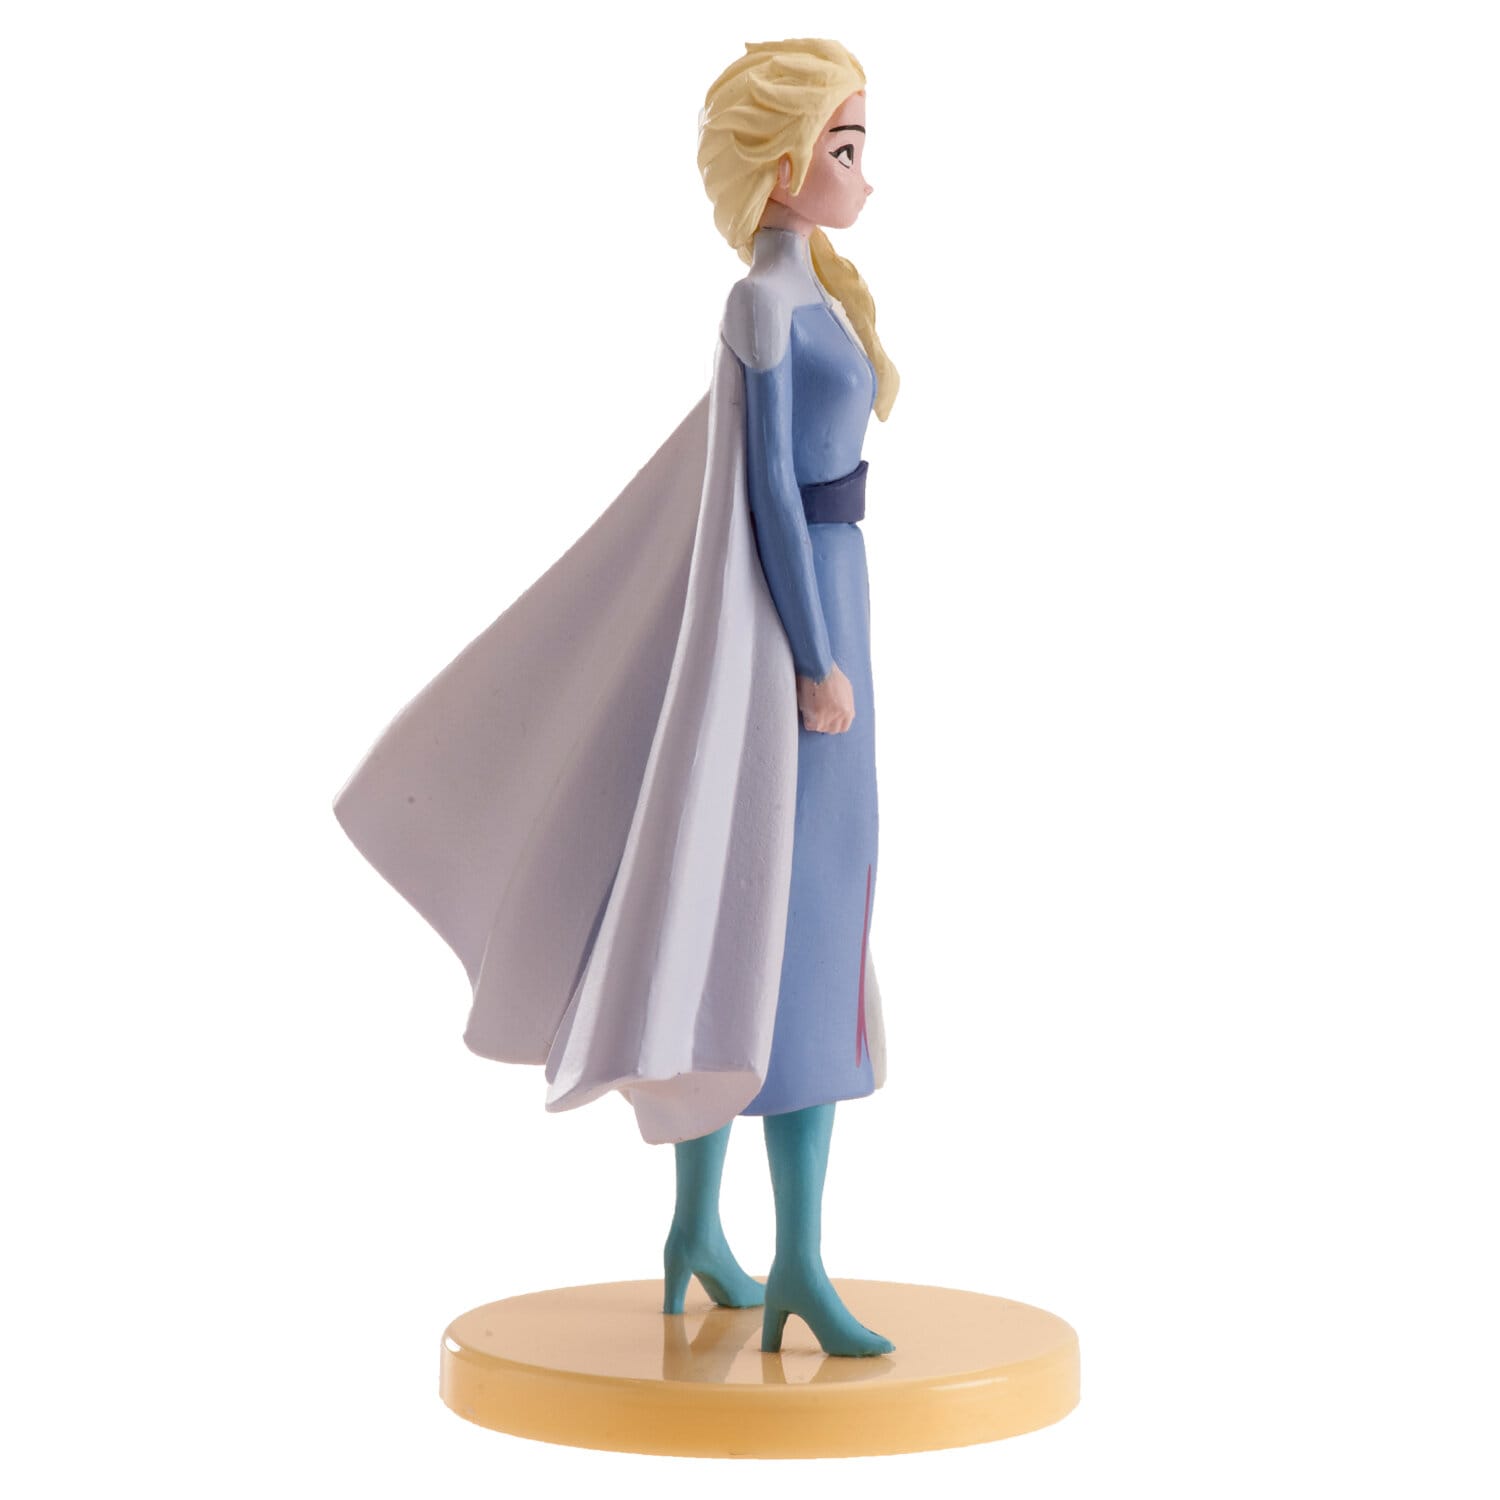 Taartfiguur Frozen 2 - Elsa 9,5 cm